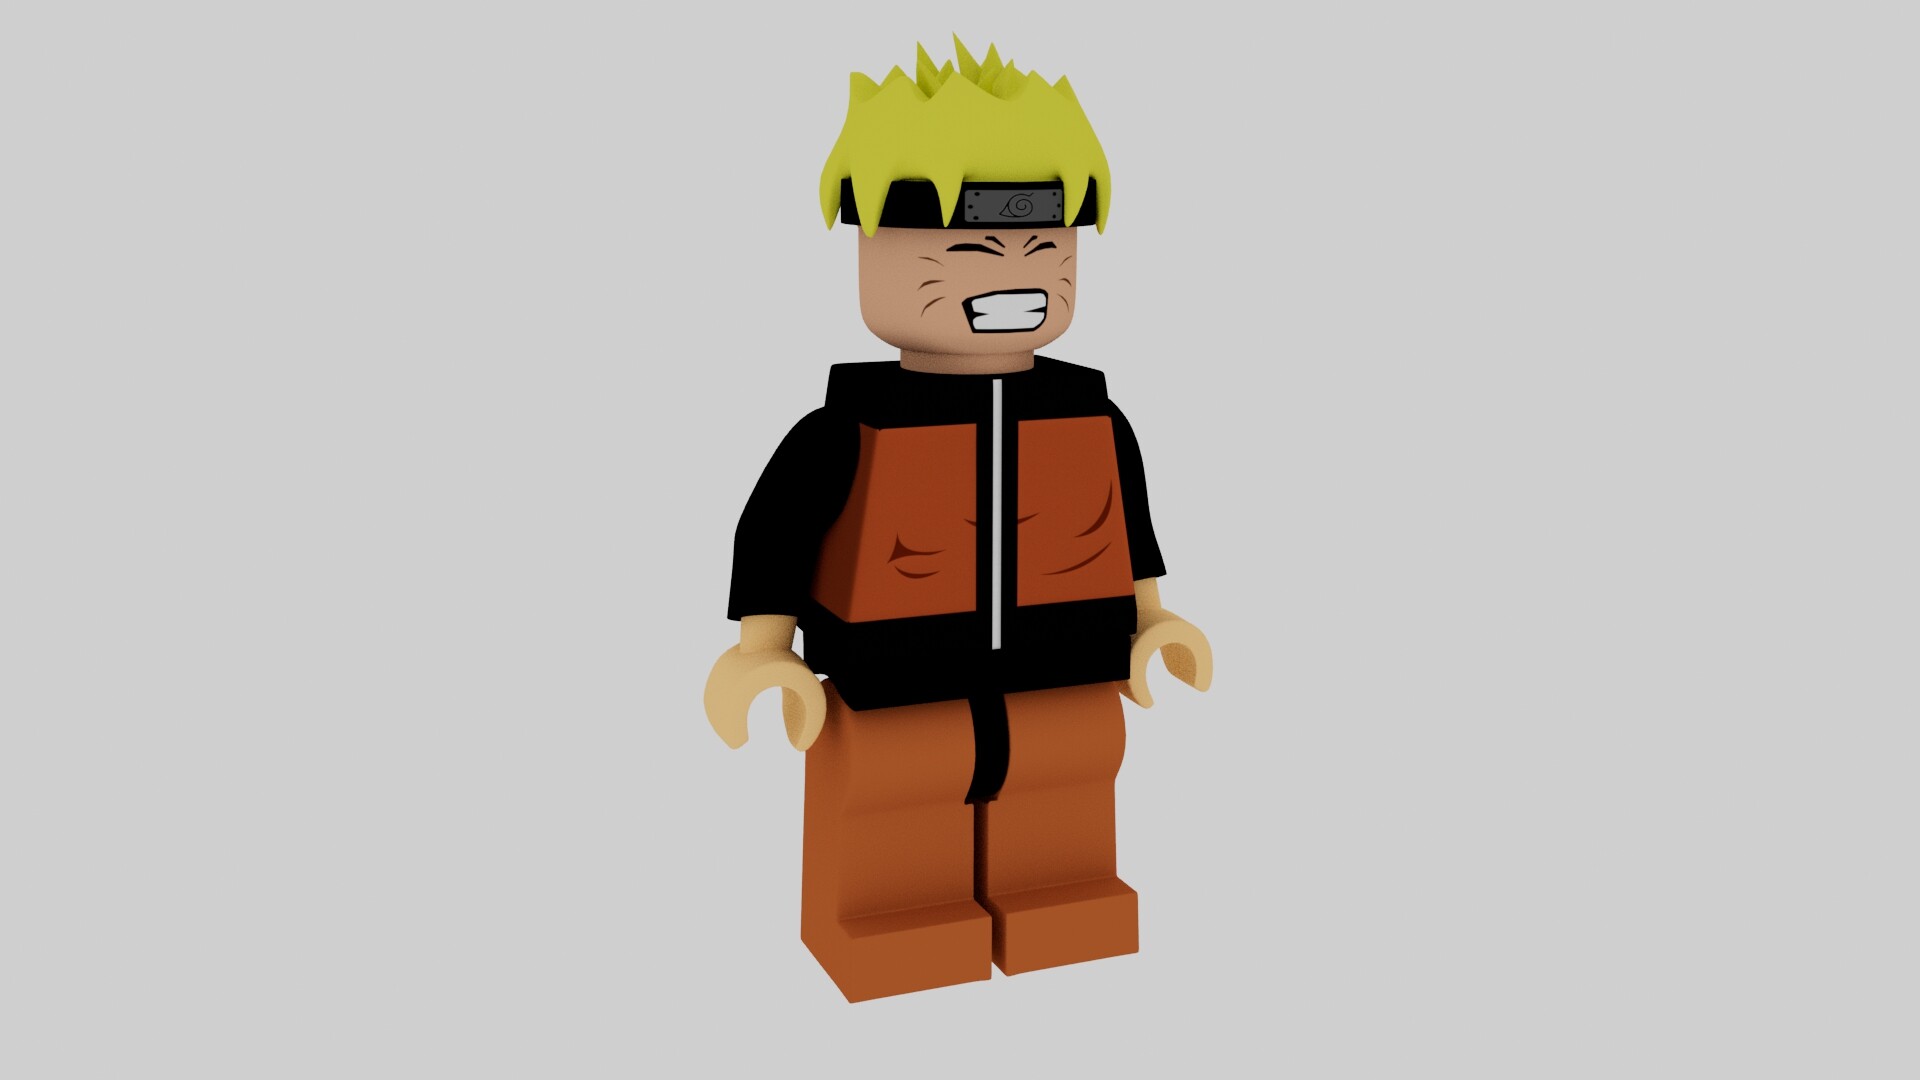 Nếu bạn là fan của Naruto và Lego, thì thật tuyệt vời khi có mô hình Lego Naruto roblox avatar viewer để tạo ra chiếc avatar roblox đặc biệt cho riêng bạn. Tải ngay hôm nay và xây dựng nhân vật của bạn trong thế giới Roblox!